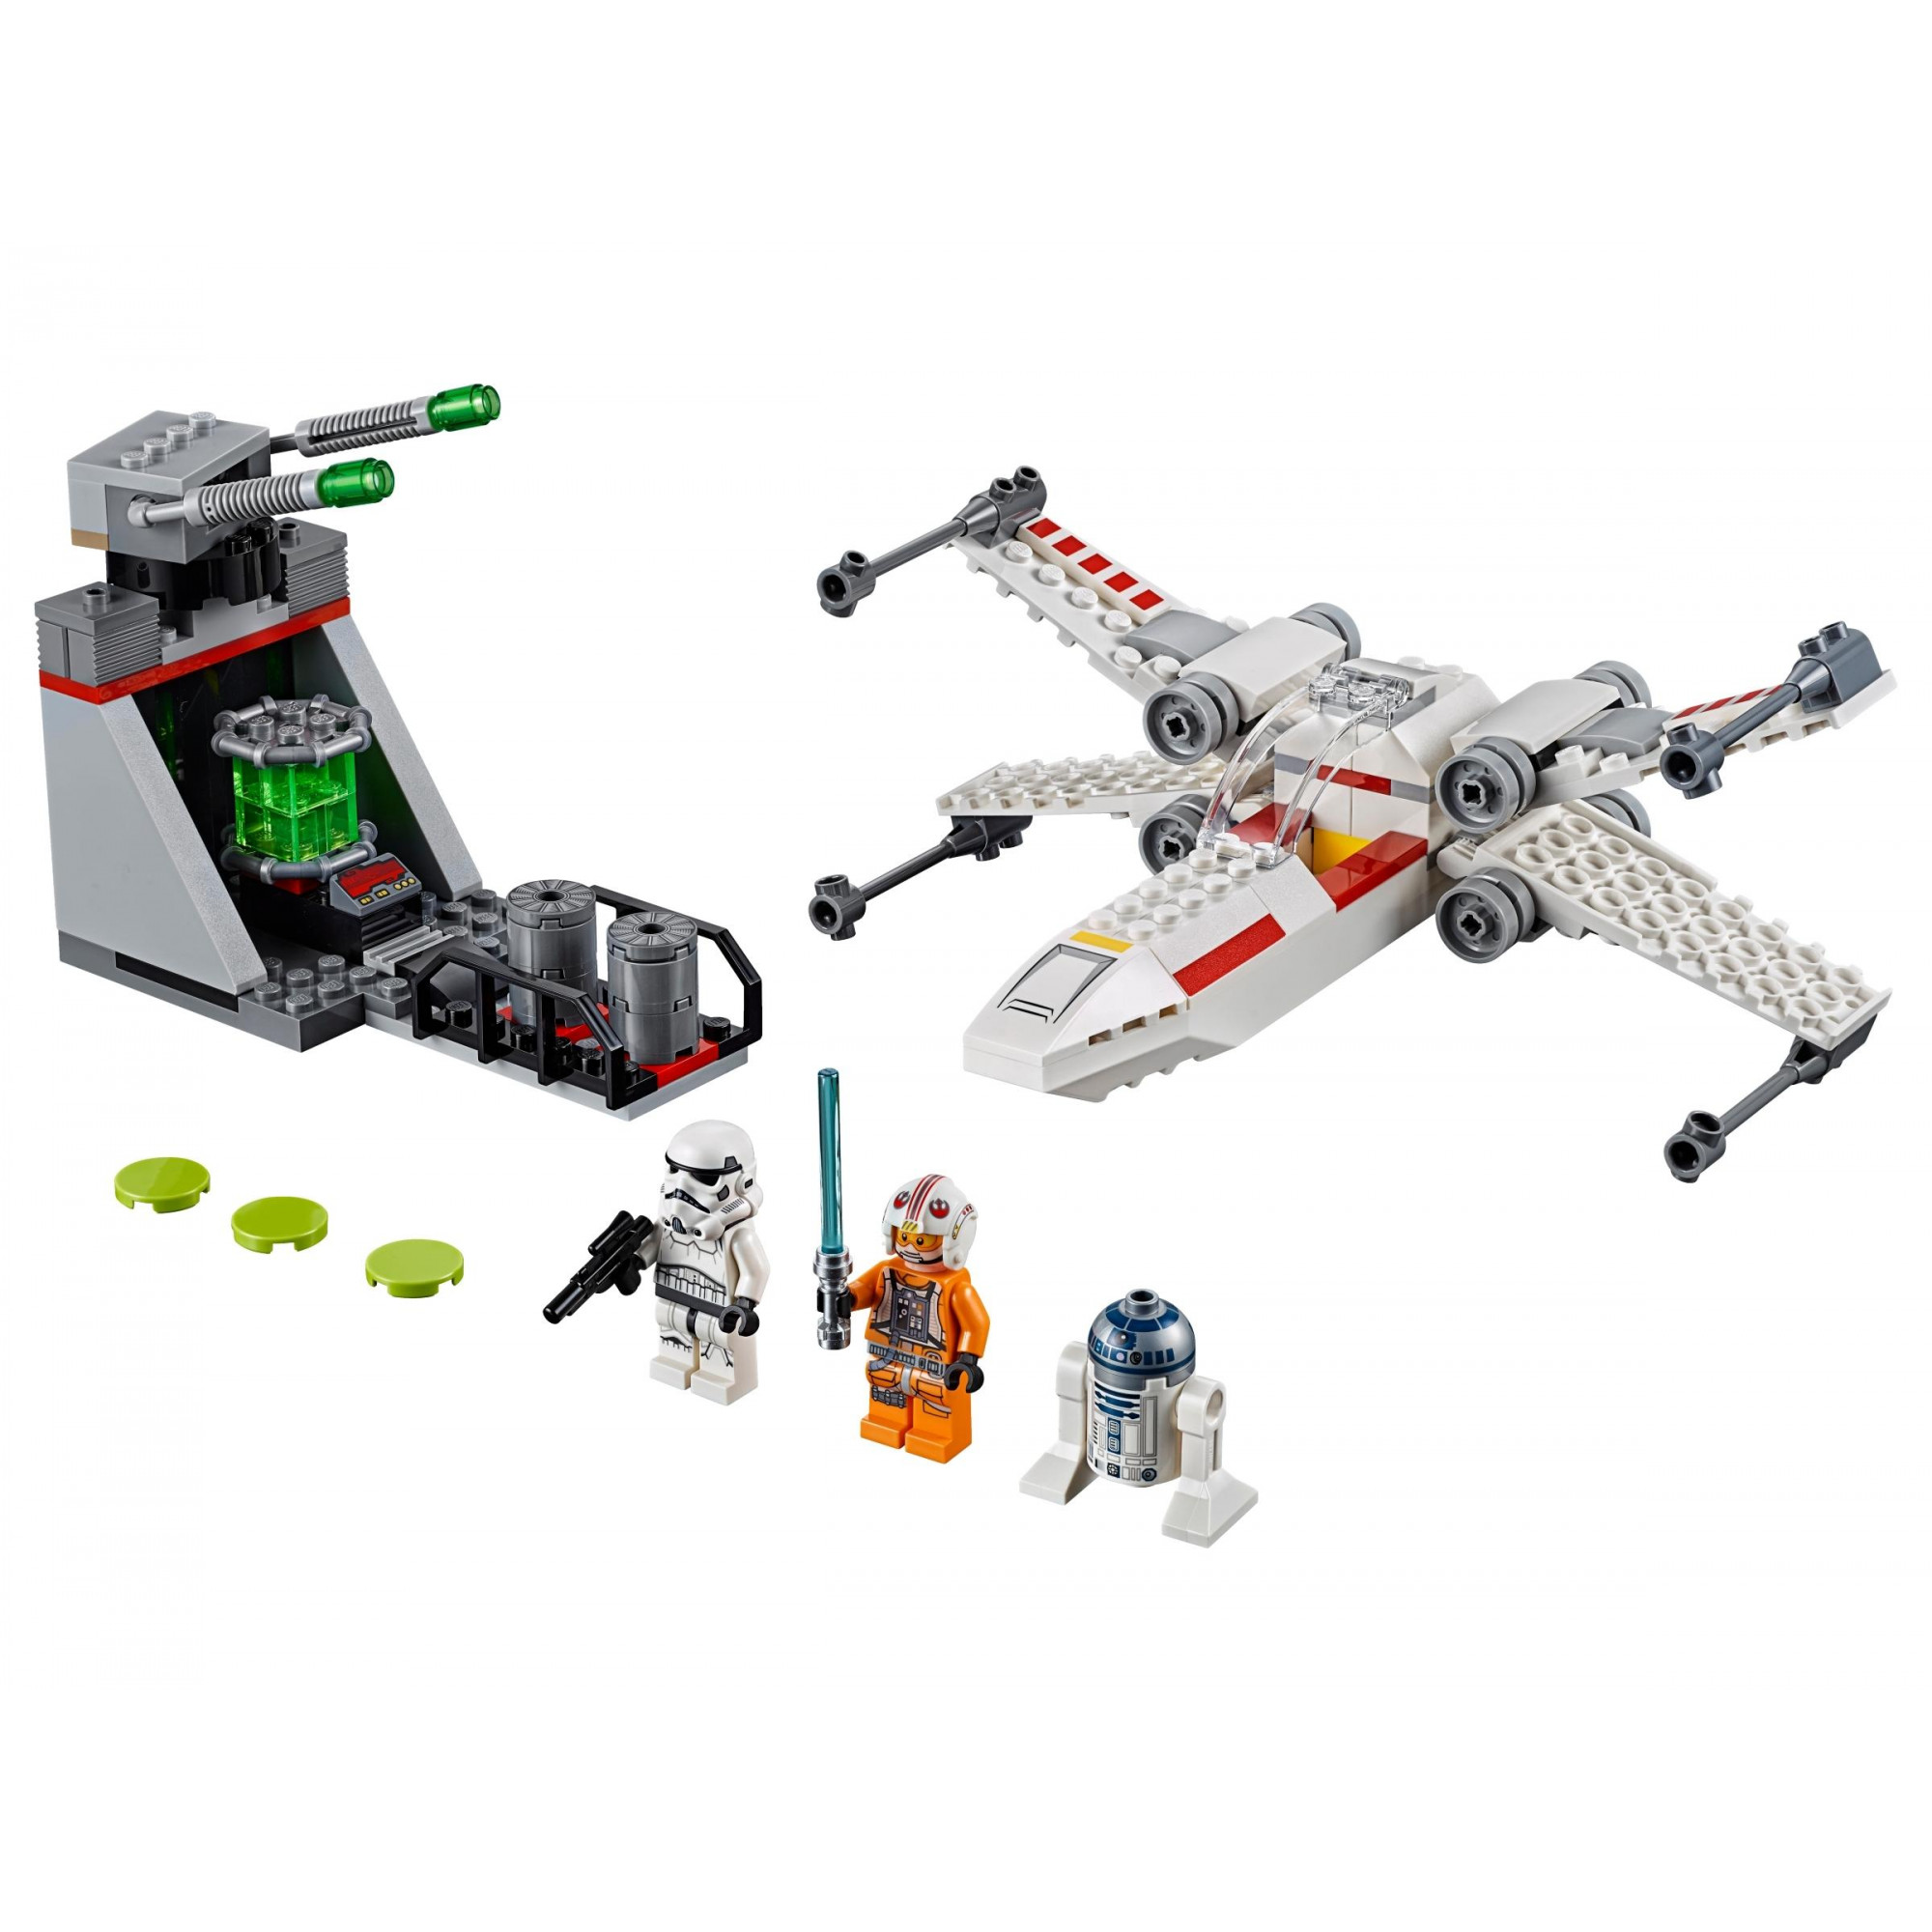 LEGO Star Wars Звездный истребитель типа X (75235) - зображення 1